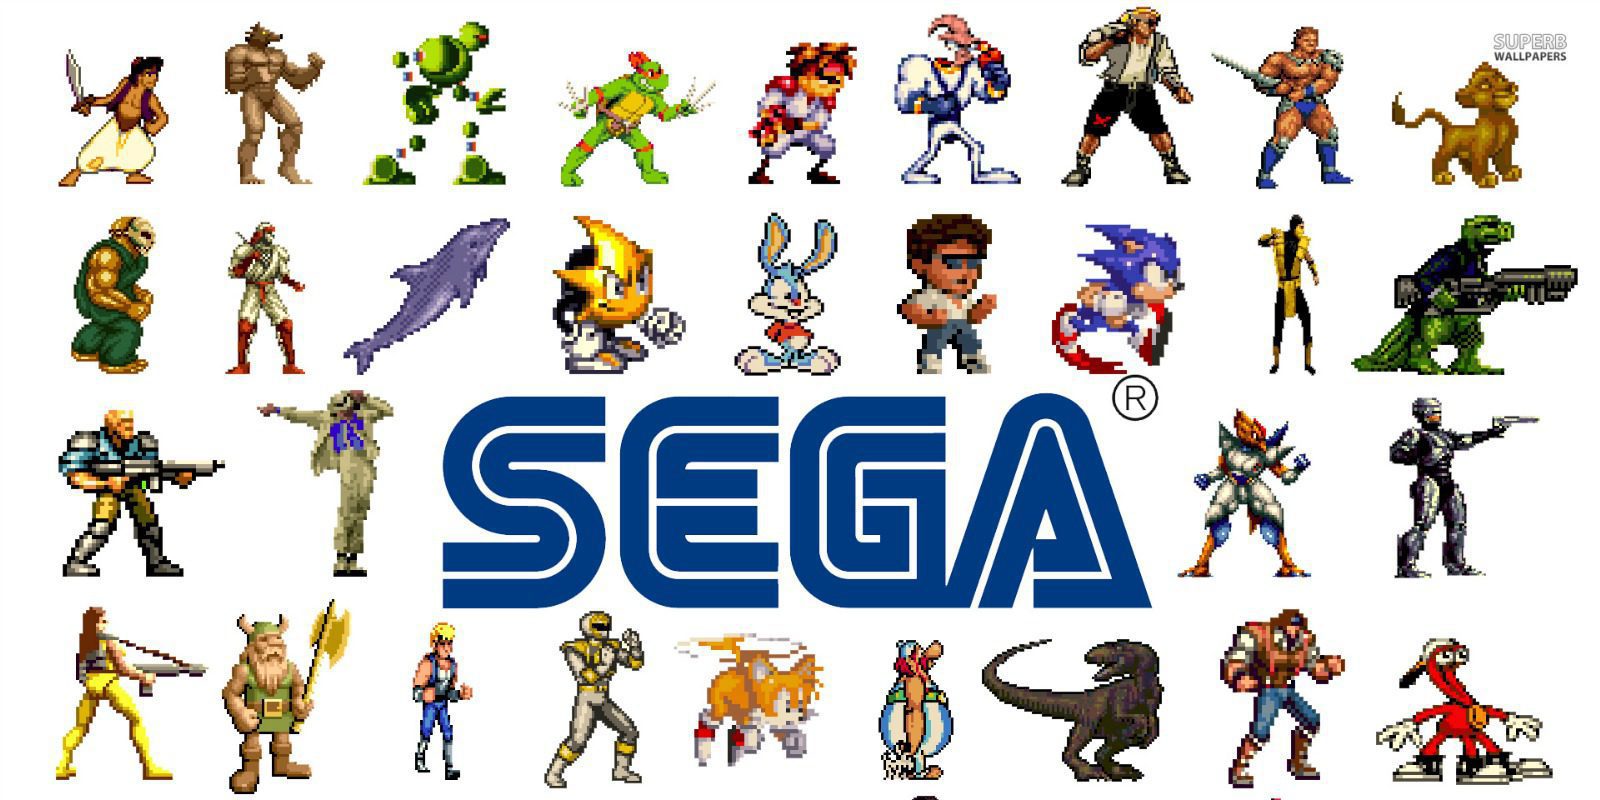 Sega sacará provecho de licencias olvidadas en los próximos años